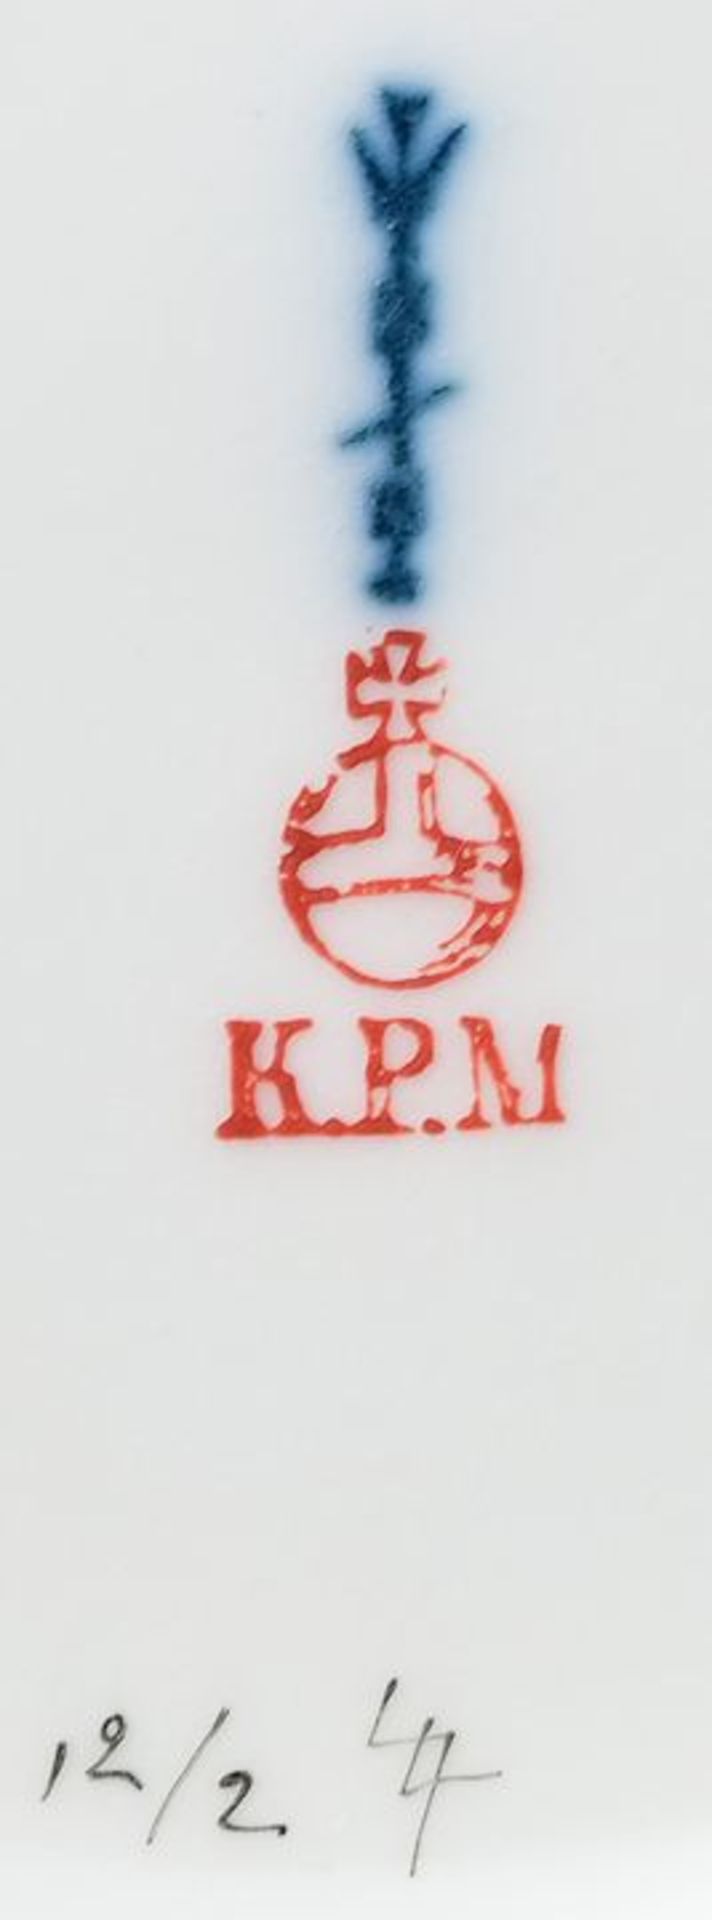 KPM, Teller/ plate - Image 3 of 3